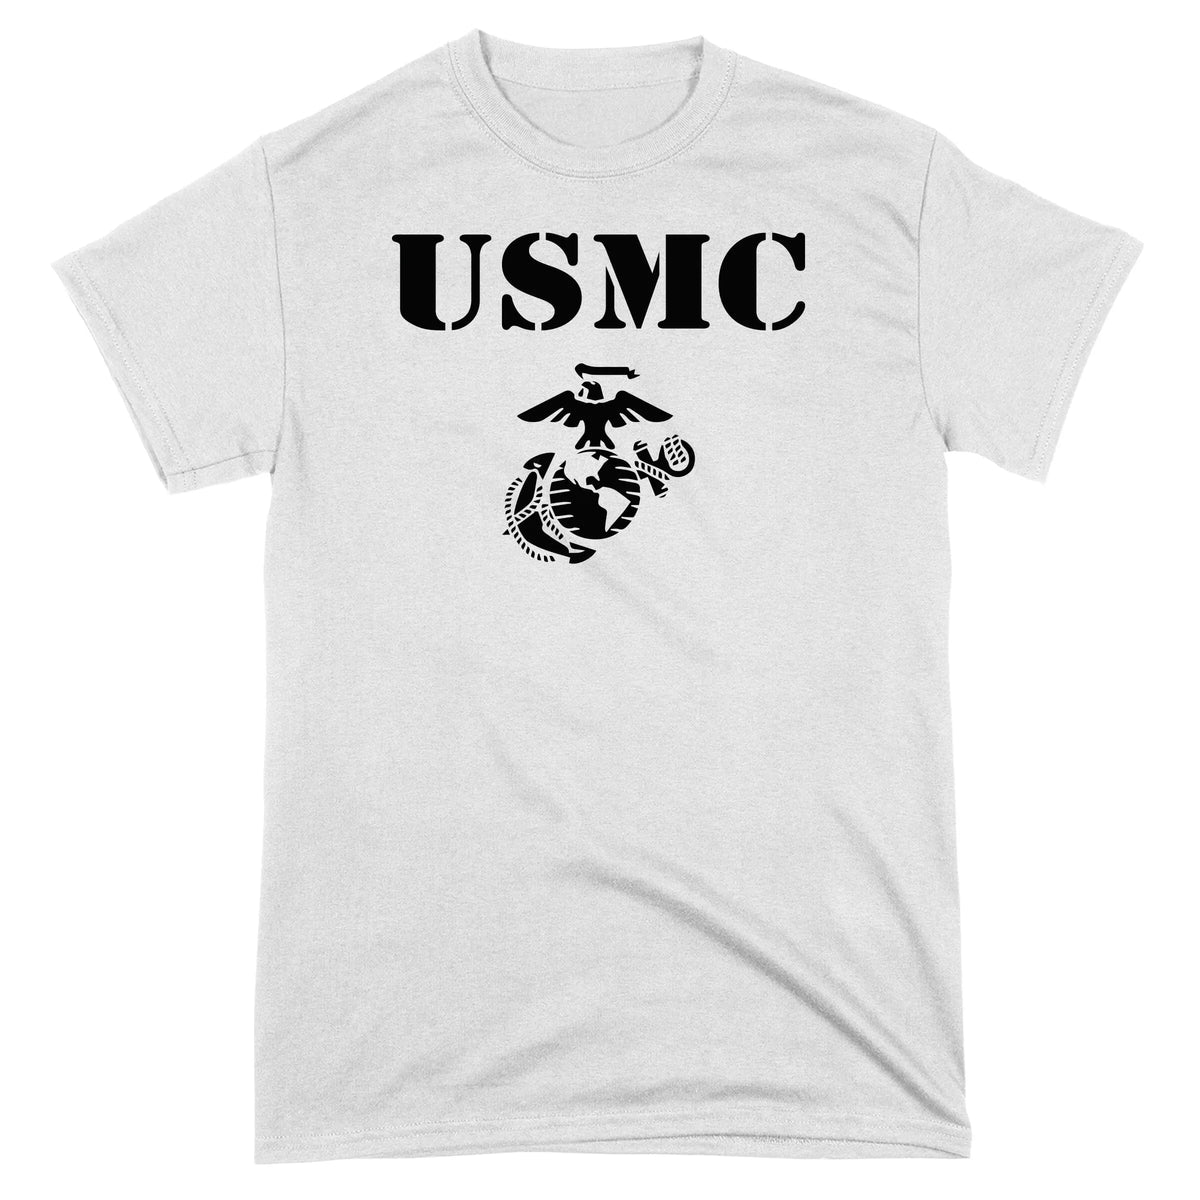 Closeout White USMC EGA Tee Shirt Small Only ($6.95)